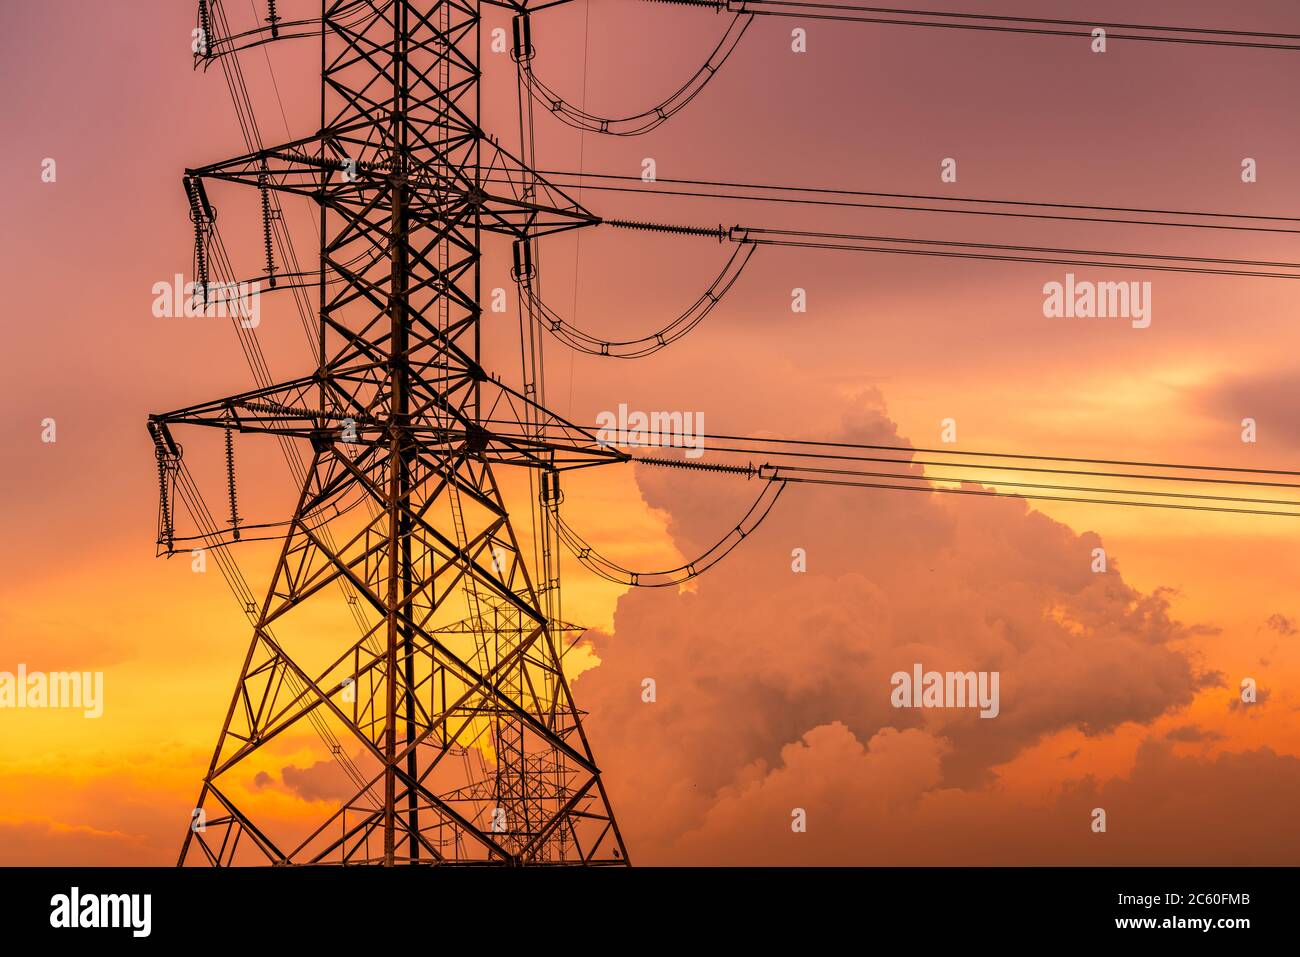 Hochspannungs-elektrischer Pylon und elektrische Leitung mit Sonnenuntergang Himmel. Strommast. Energie- und Energiekonzept. Hochspannungs-Netzturm mit Drahtkabel. Stockfoto